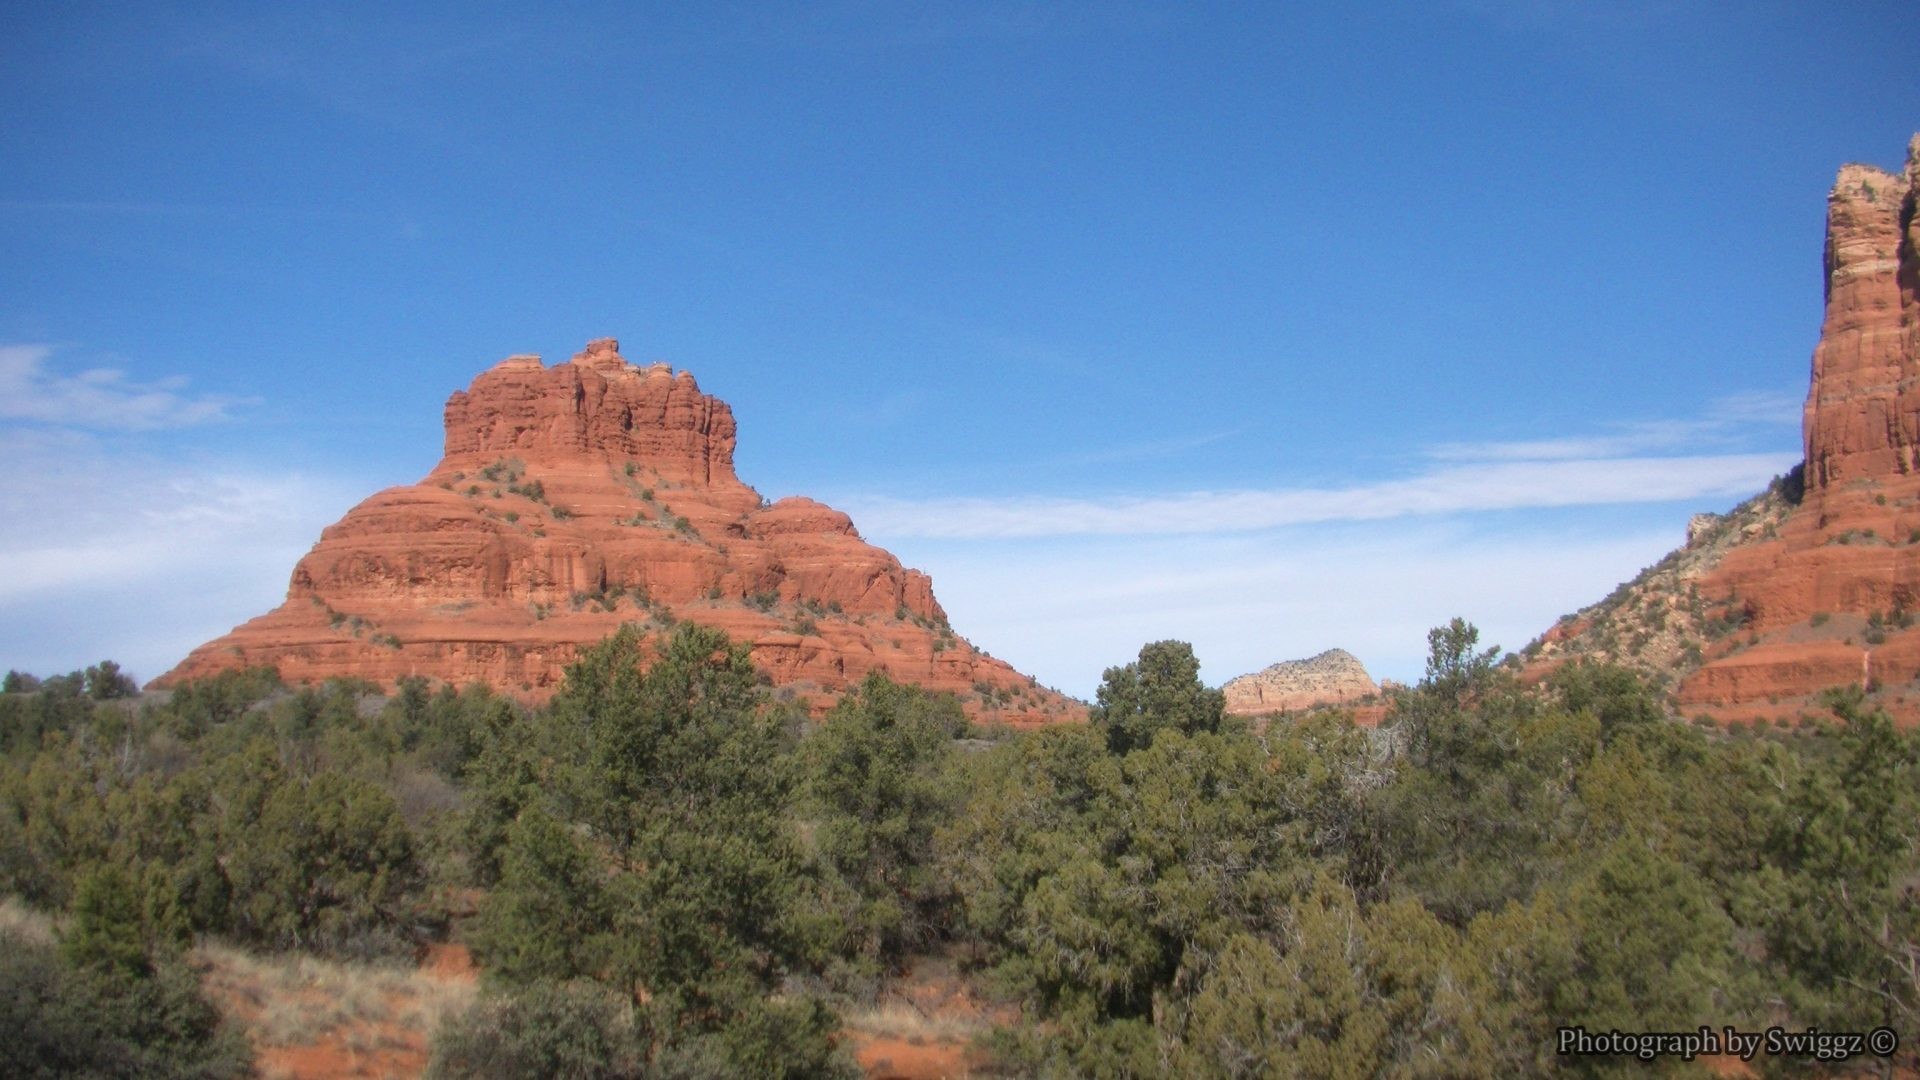 1920x1080 Desert - Bell Rock Sedona Arizona Nature Desert Sky Pictures For Desktop  for HD 16: